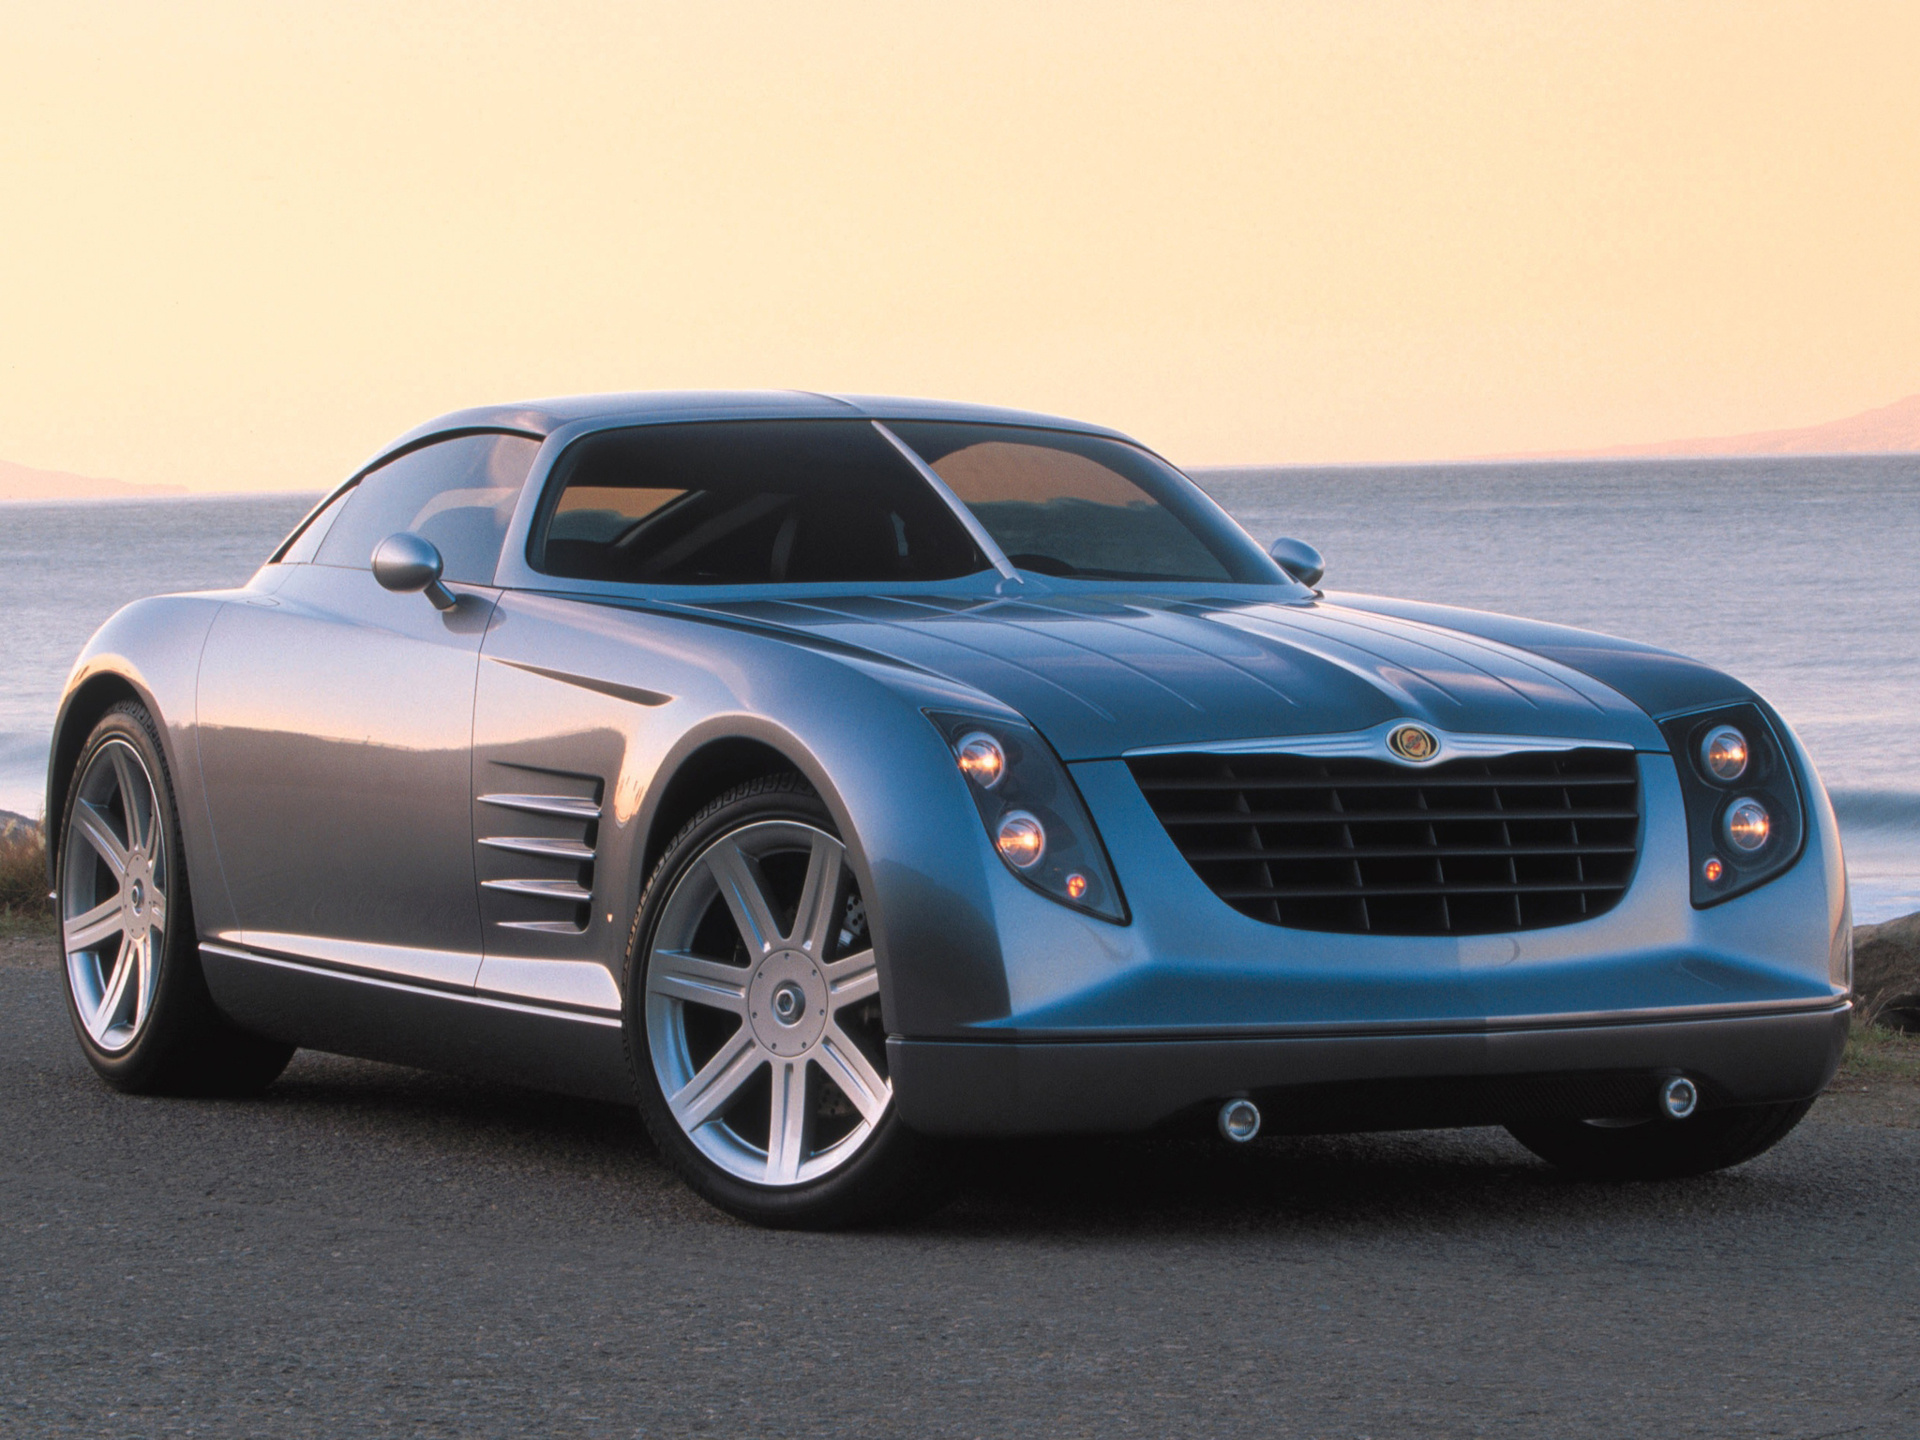 Chrysler automobiles, 2001 concept, Crossfire design, Futuristic appearance, 1920x1440 HD Desktop